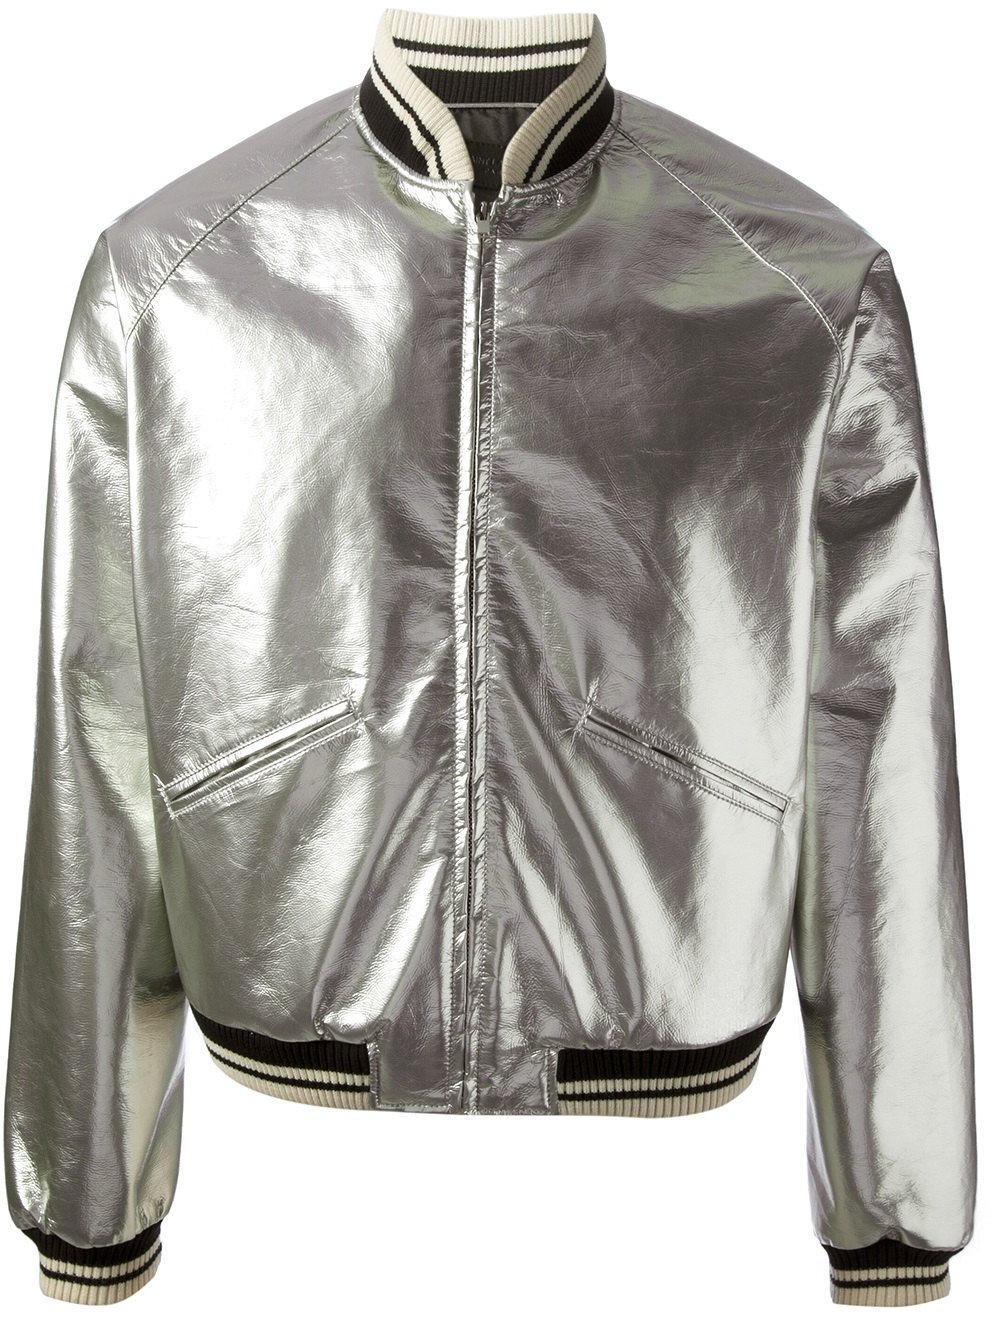 Lyst - Saint Laurent Metallic Bomber Jacket in Gray for Men